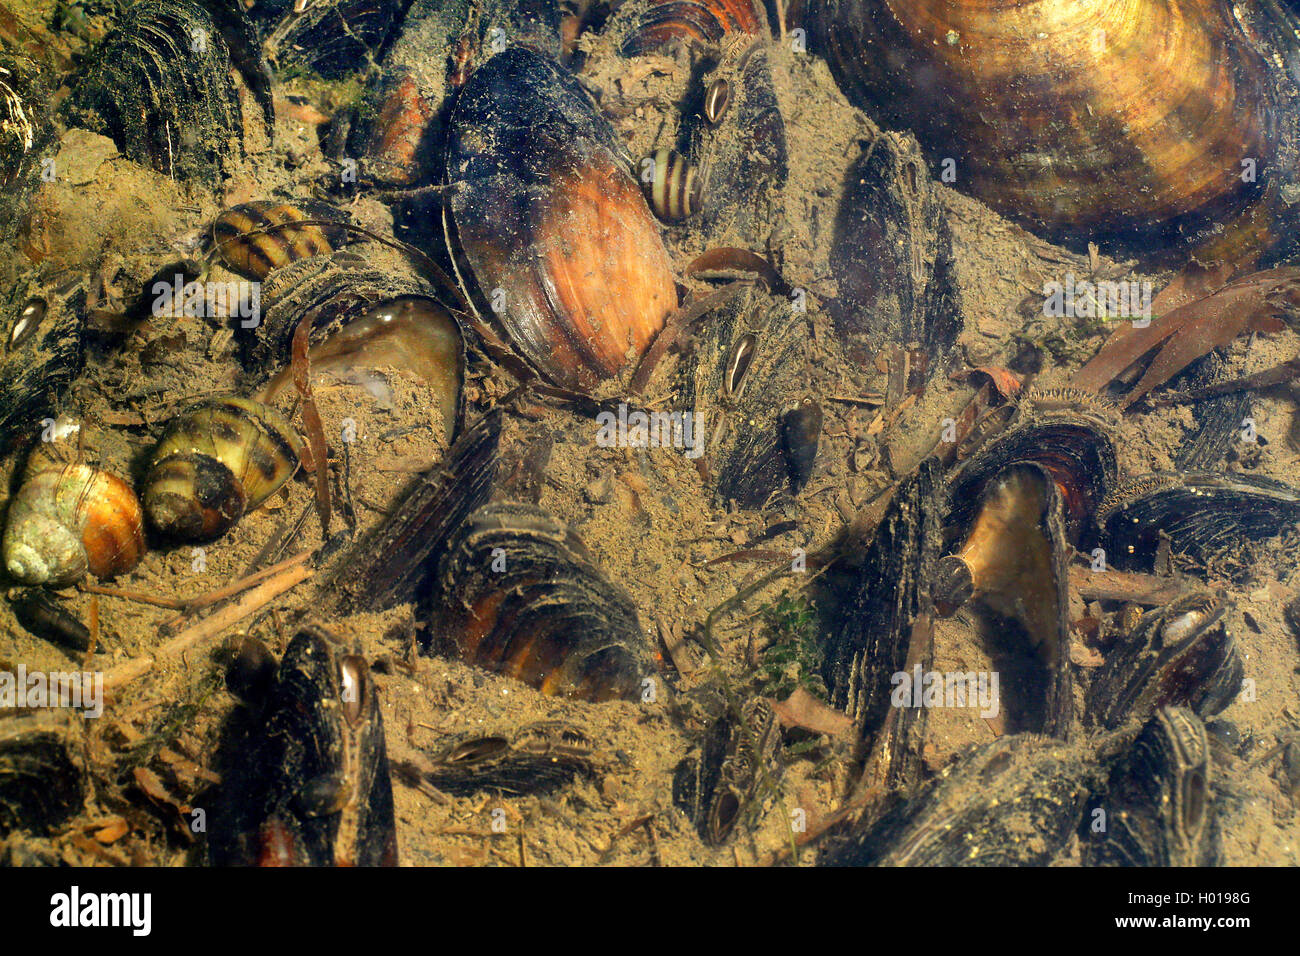 bivalves, mussels (Bivalvia), different mussels in Danube delta, Romania, Danube Delta Stock Photo